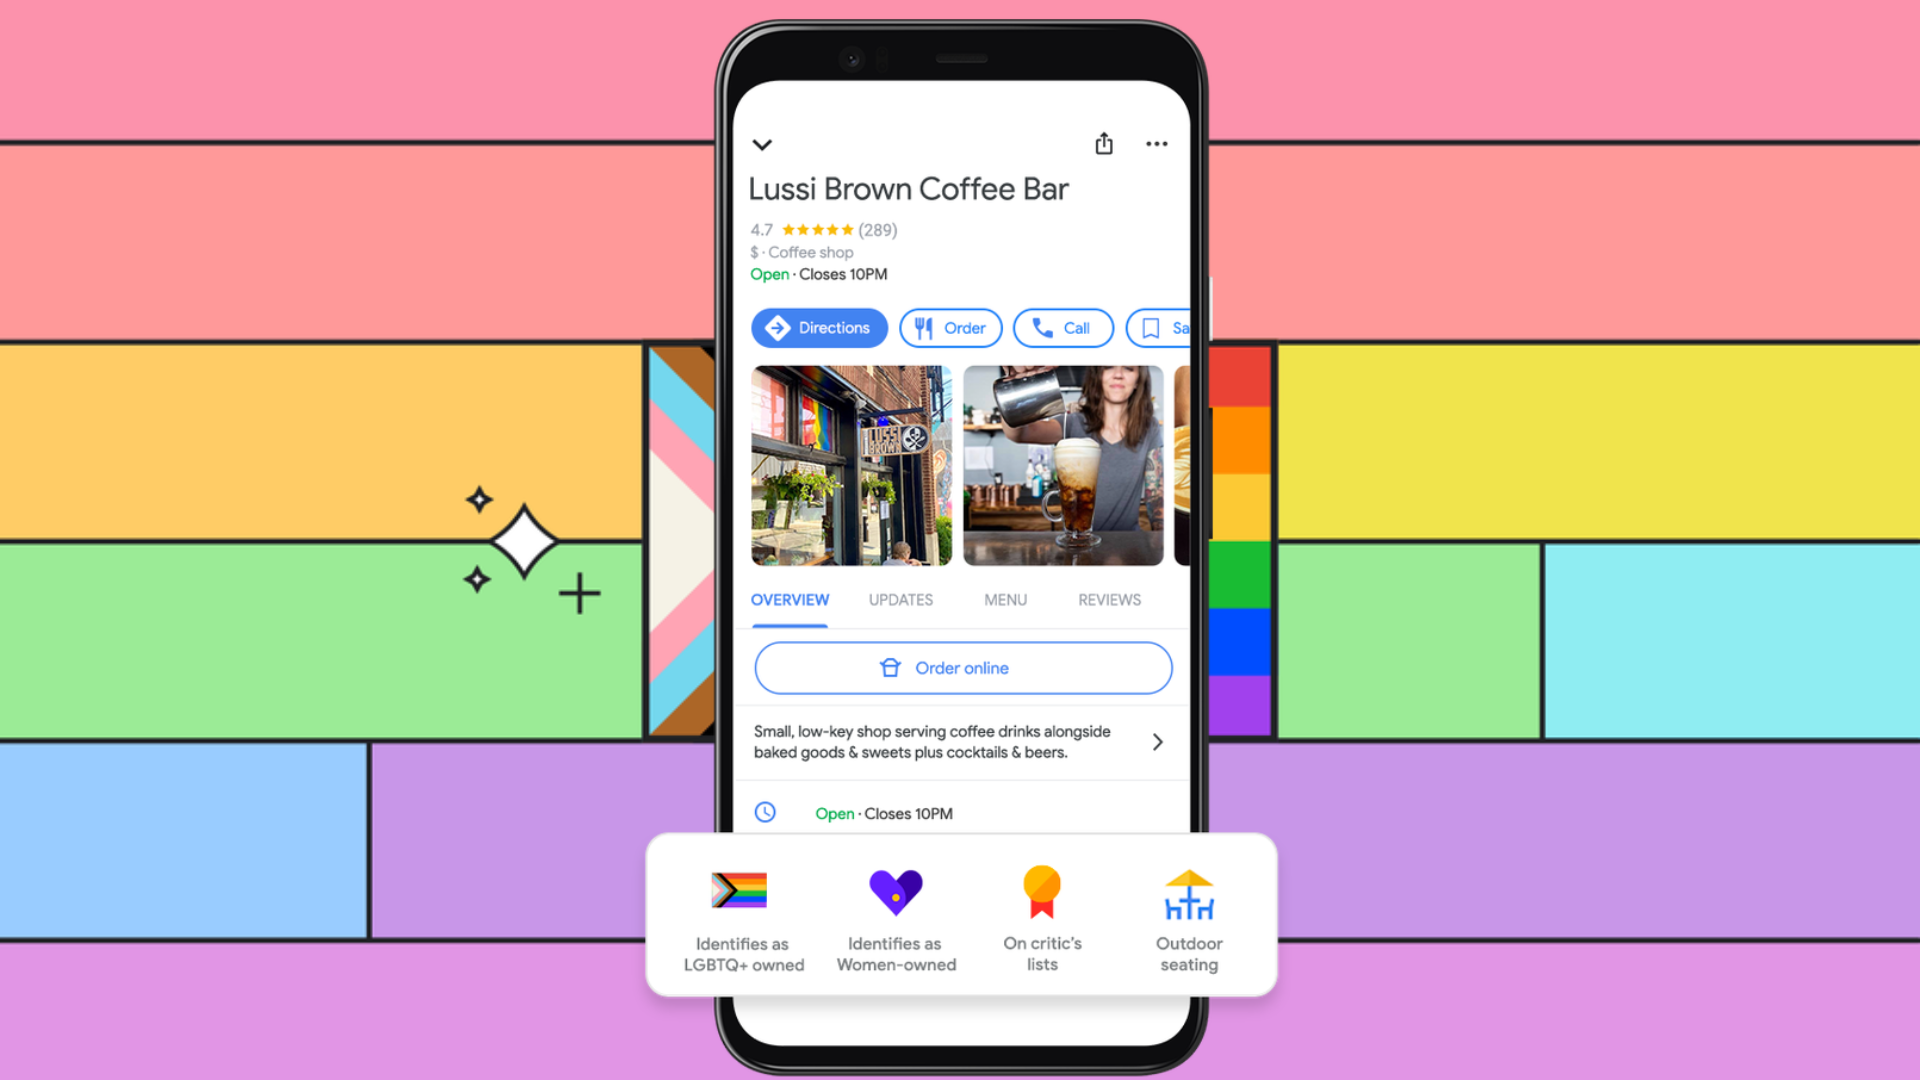  Компания, использующая новый тег LGBTQ+ на Картах Google